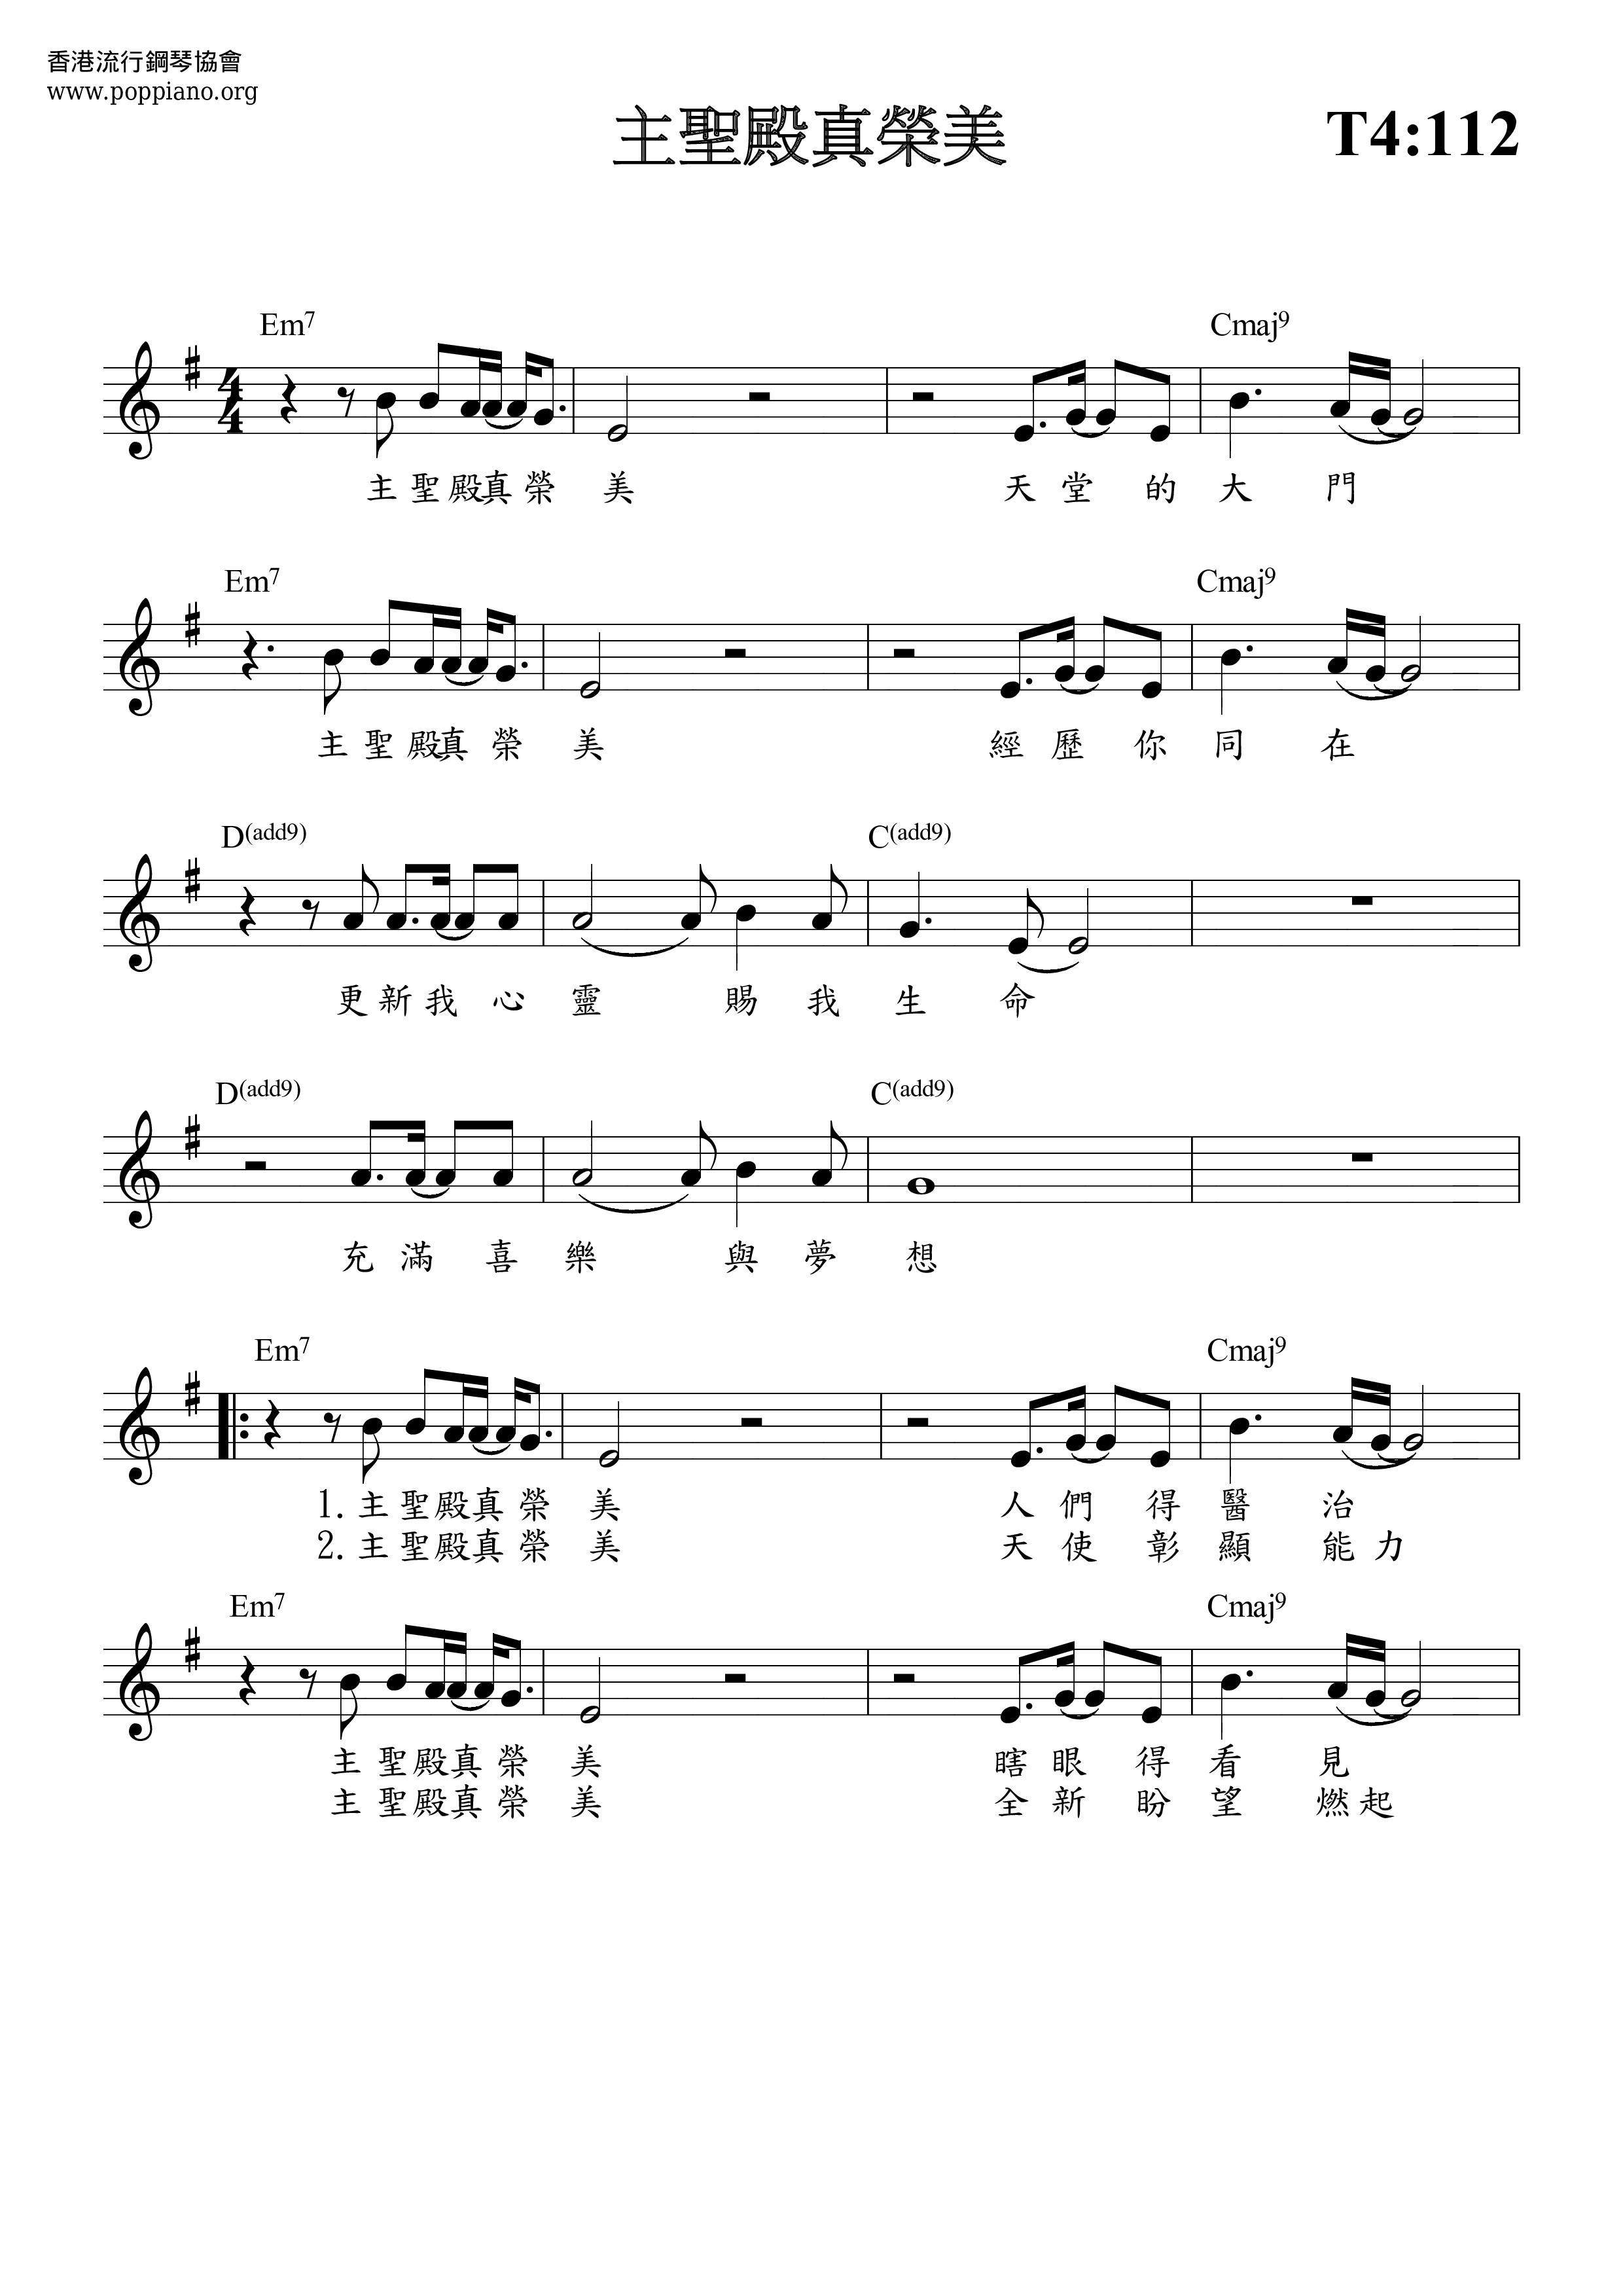 诗歌-主圣殿真荣美 琴谱/五线谱pdf-香港流行钢琴协会琴谱下载